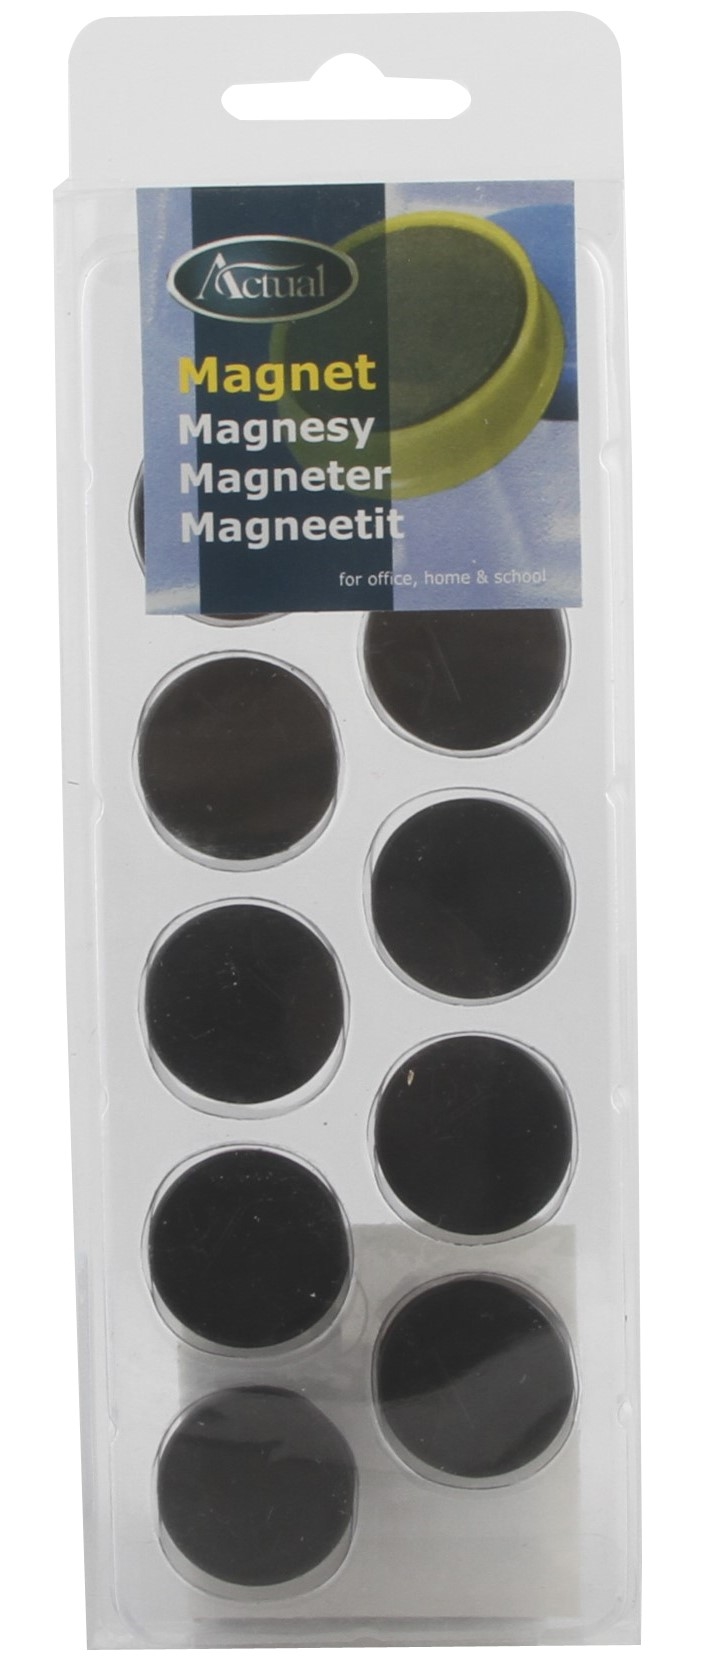 Magnet, 25mm